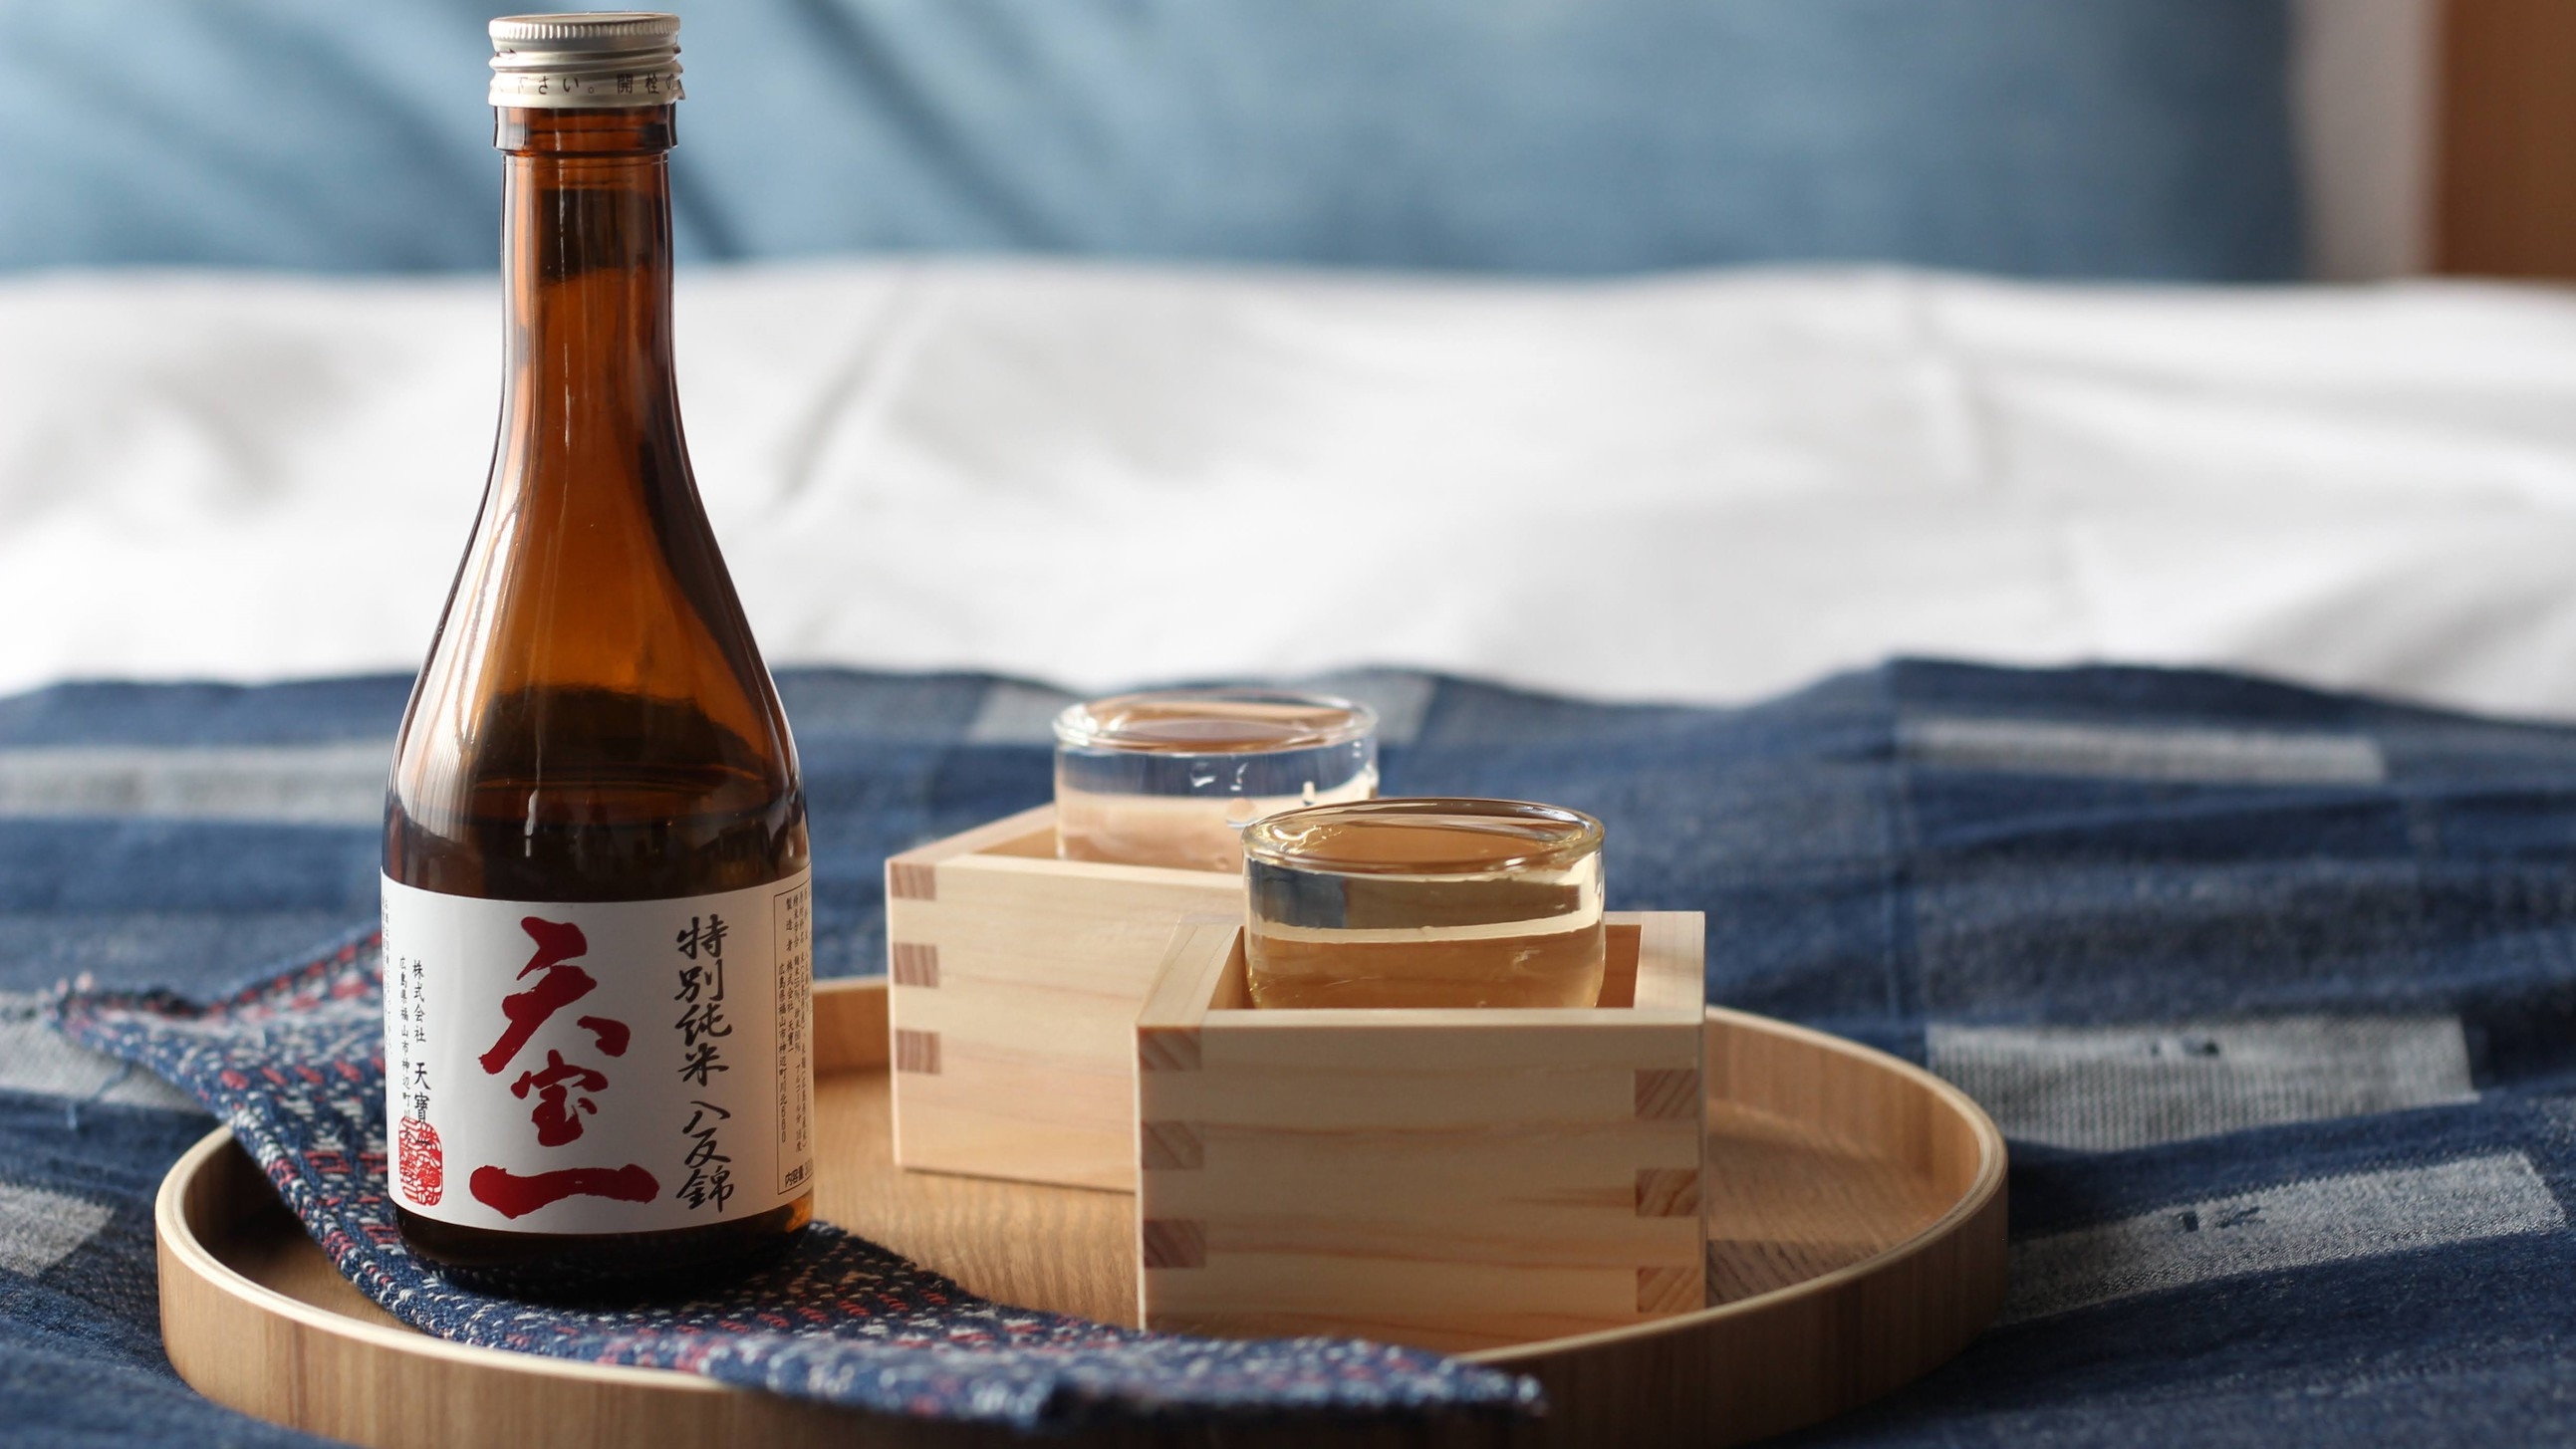 【オトナの晩酌プラン】地元の「おいしい」を集めた おつまみと地酒で 古き良き日本の文化「晩酌」を体験